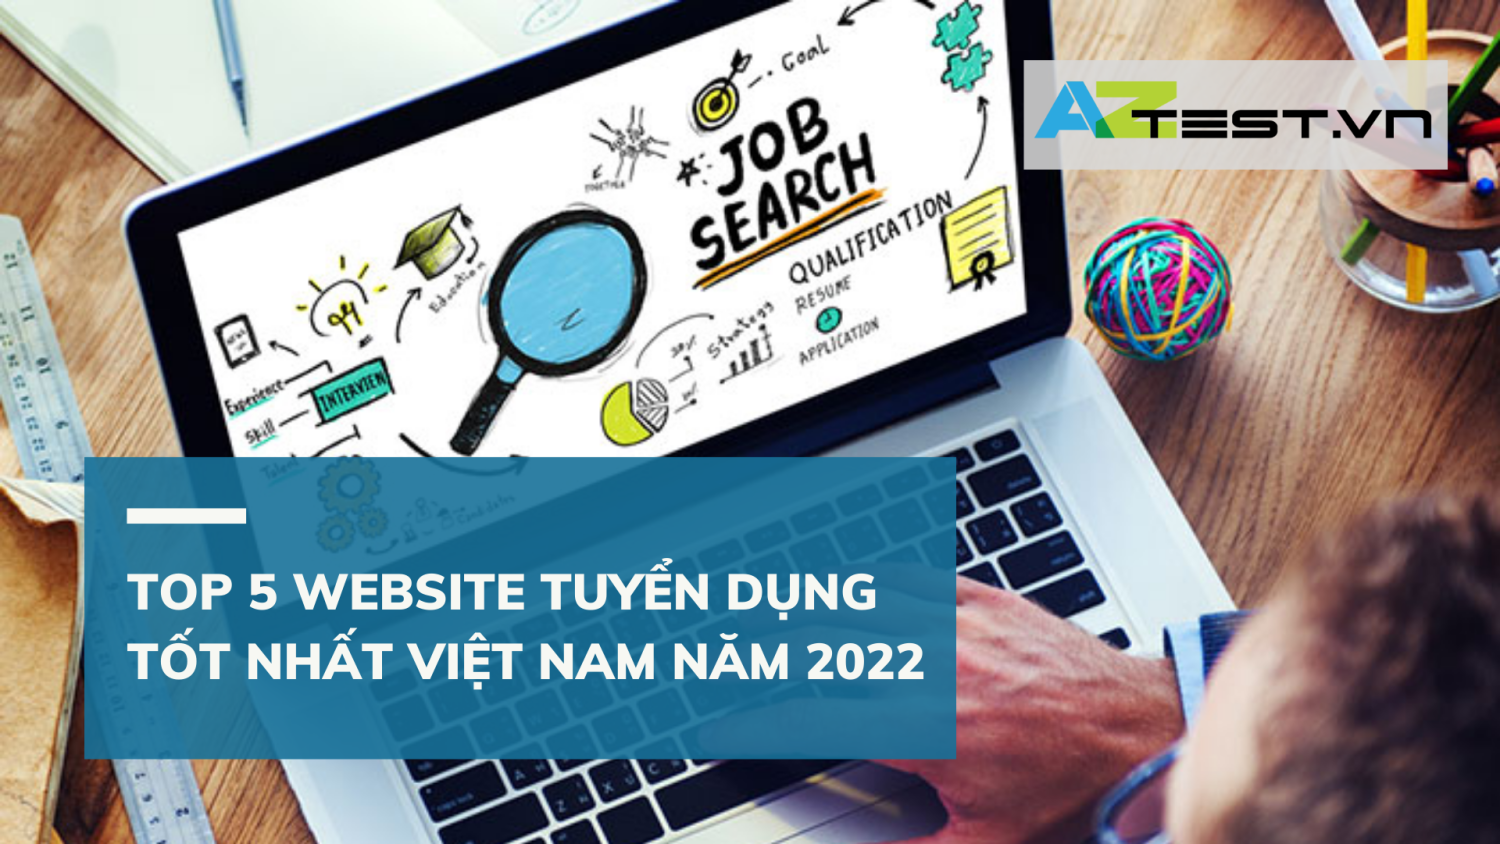 TOP 5 website tuyển dụng tốt nhất Việt Nam năm 2022